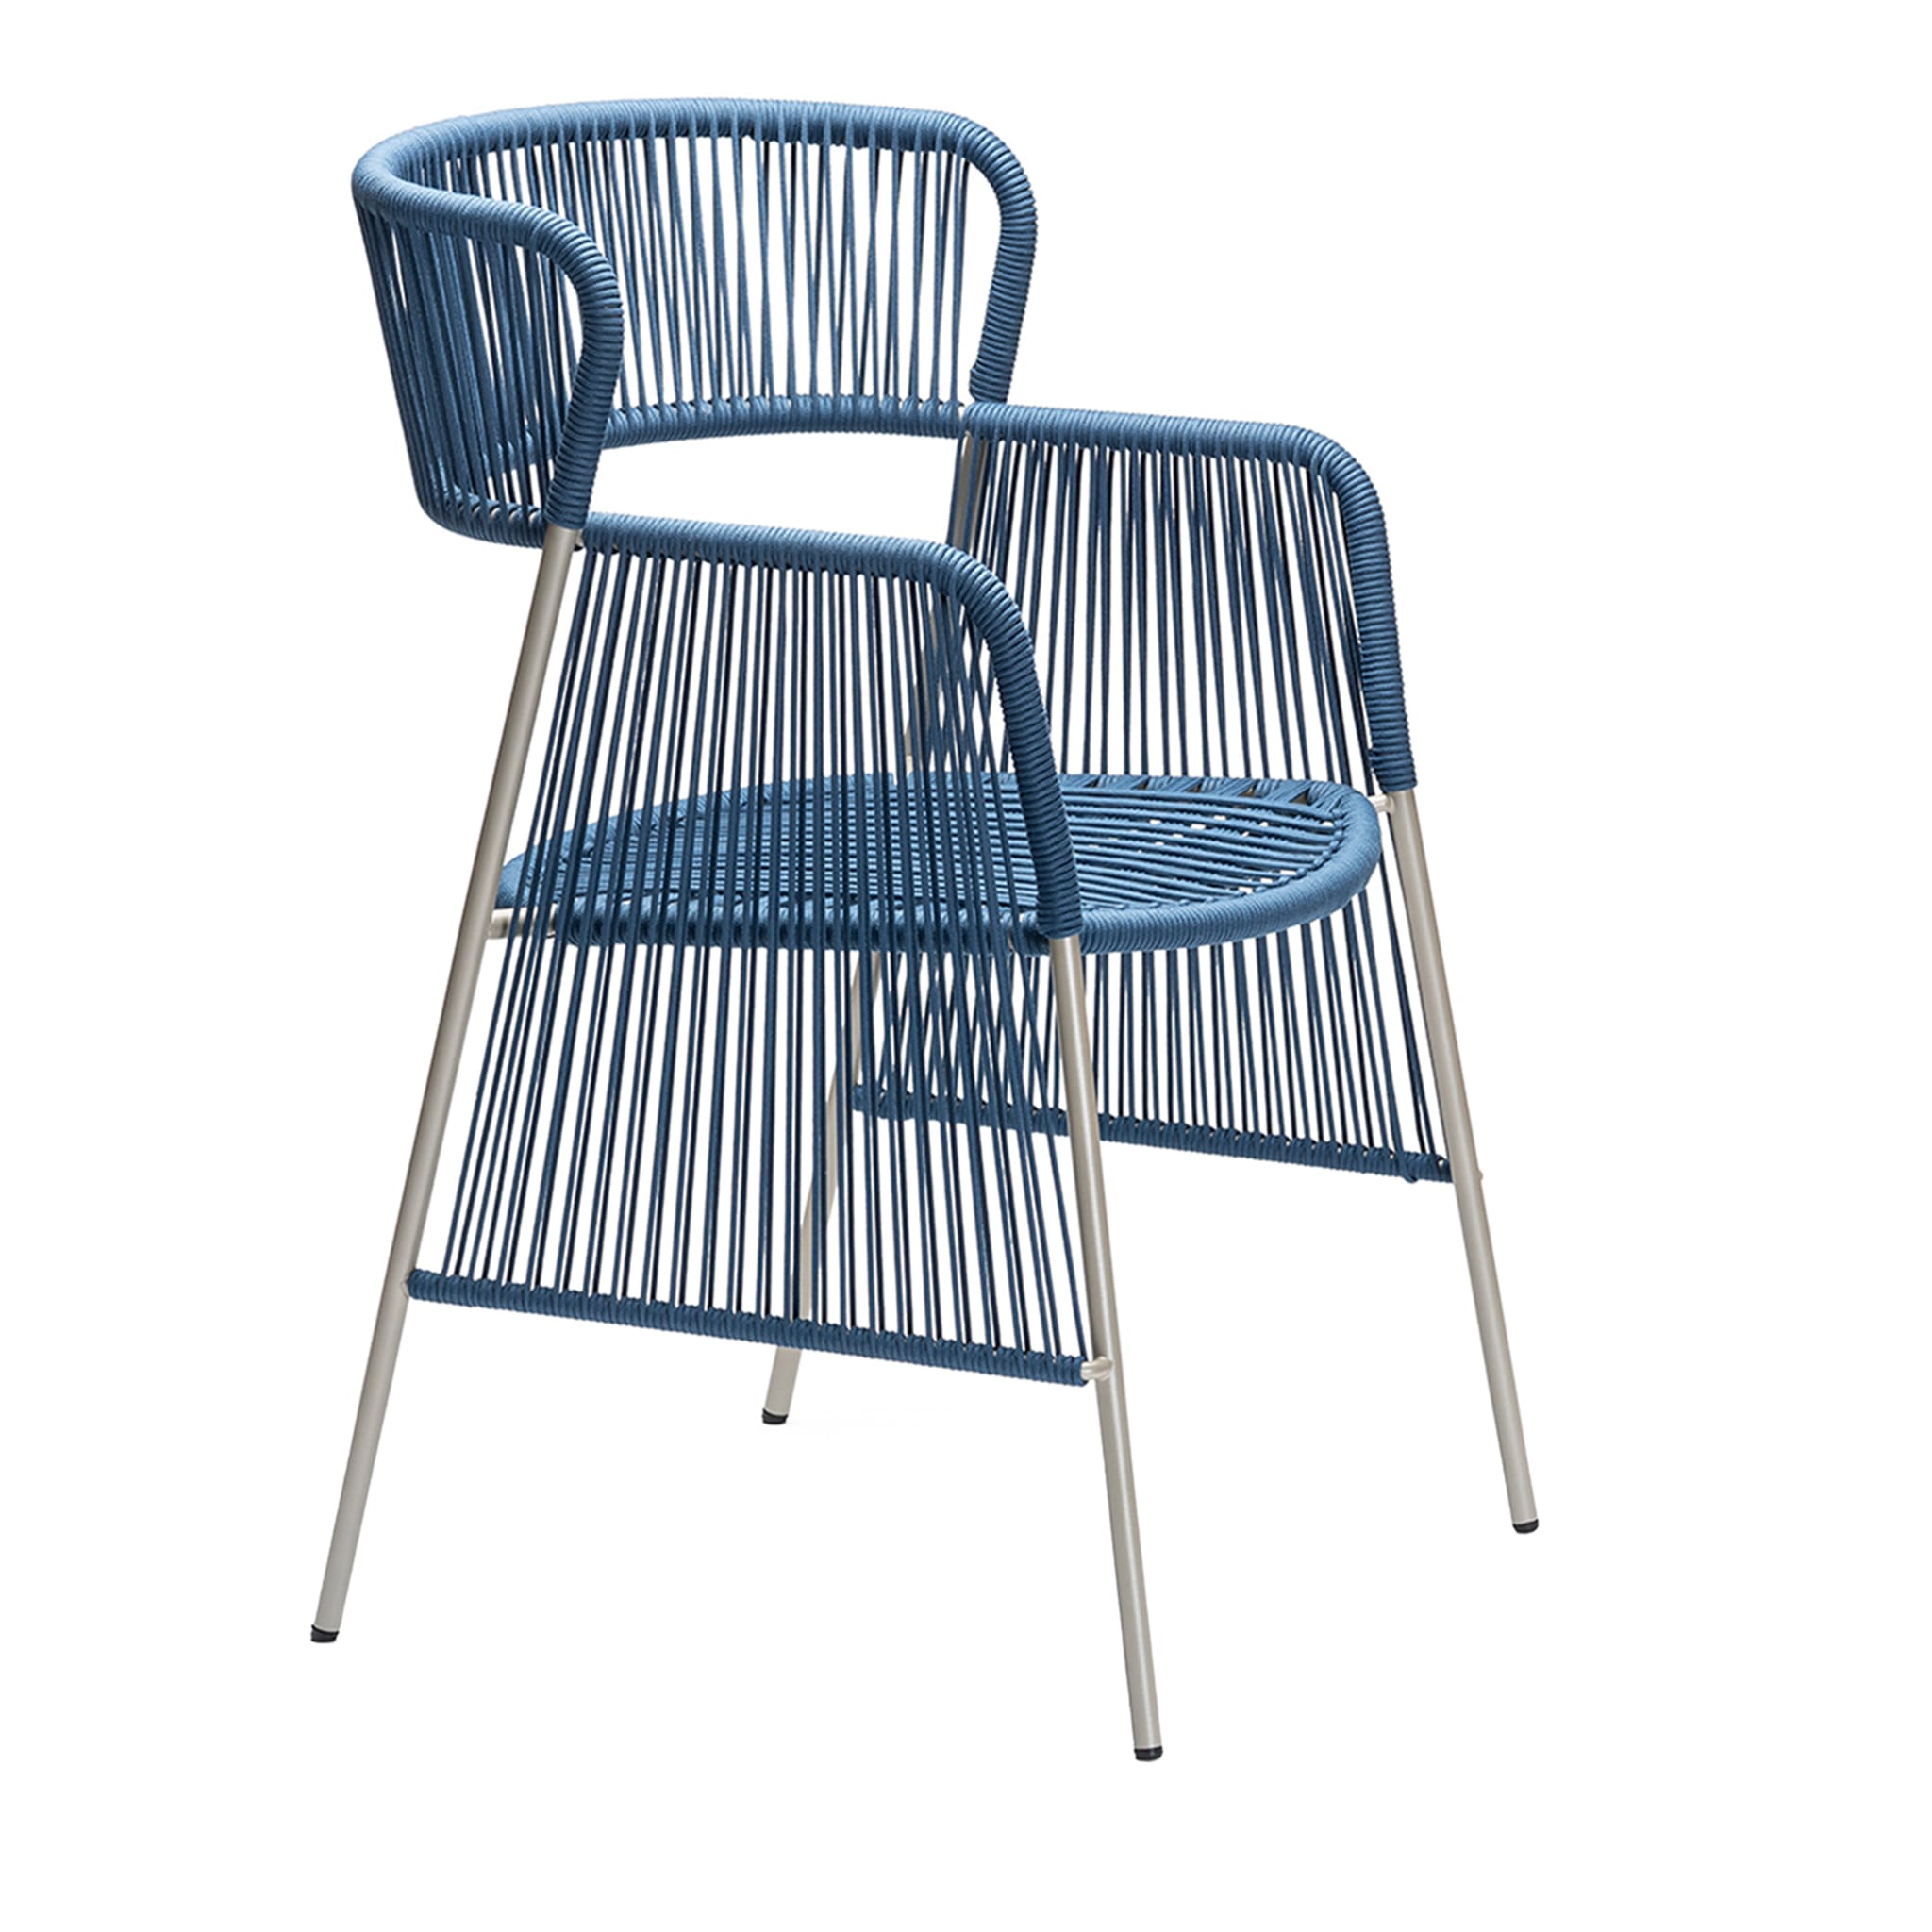 Altana SP Blauer Stuhl von Antonio De Marco - Hauptansicht